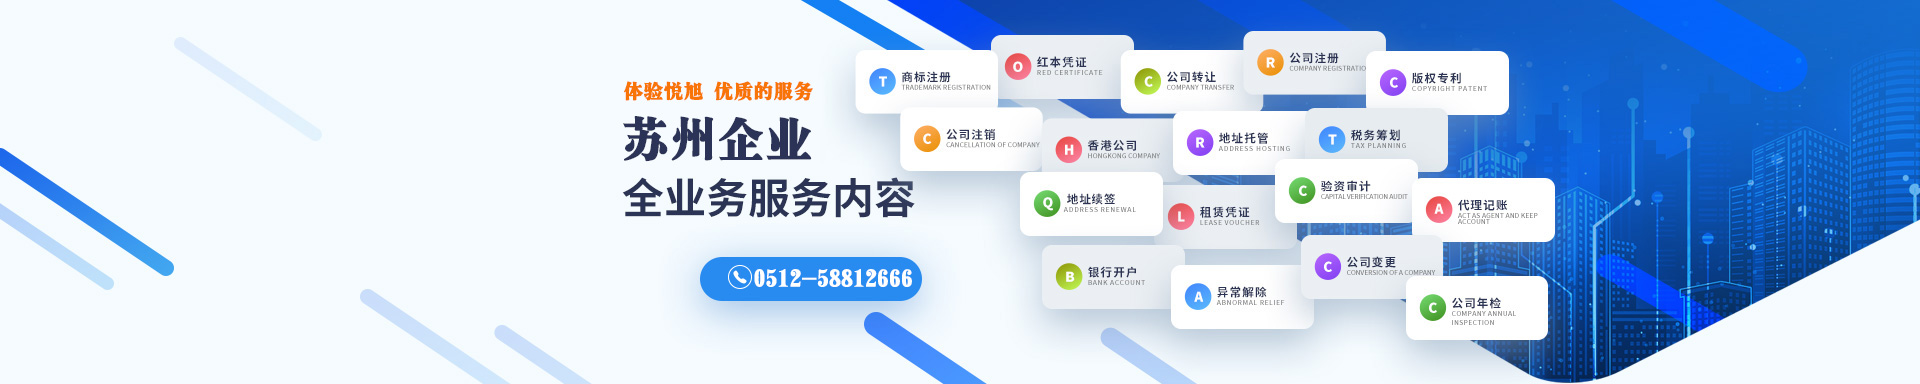 台湾博文注册流程